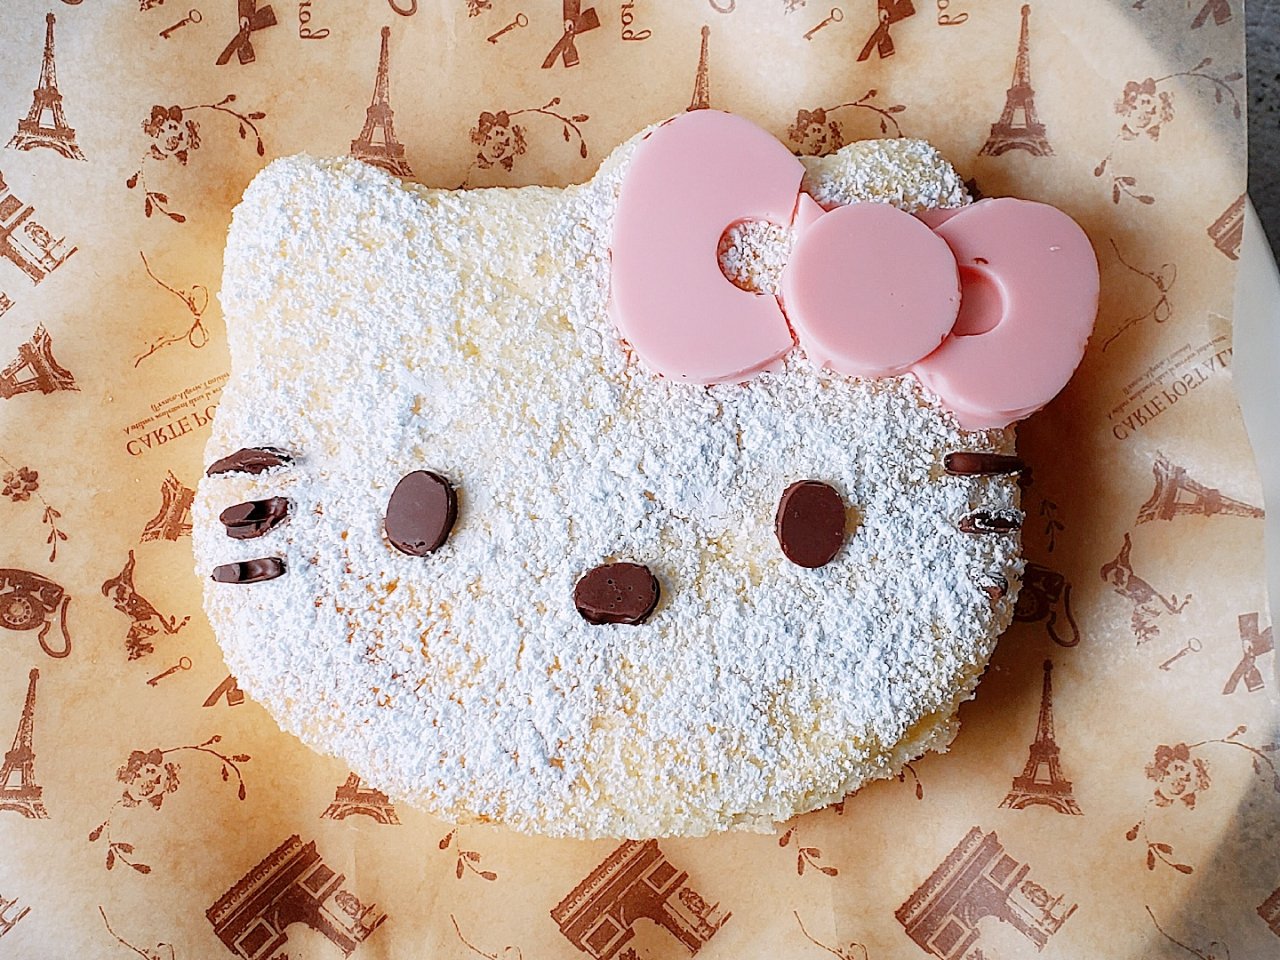 吃份幸福甜蜜凱蒂貓造型蛋糕 🌸...